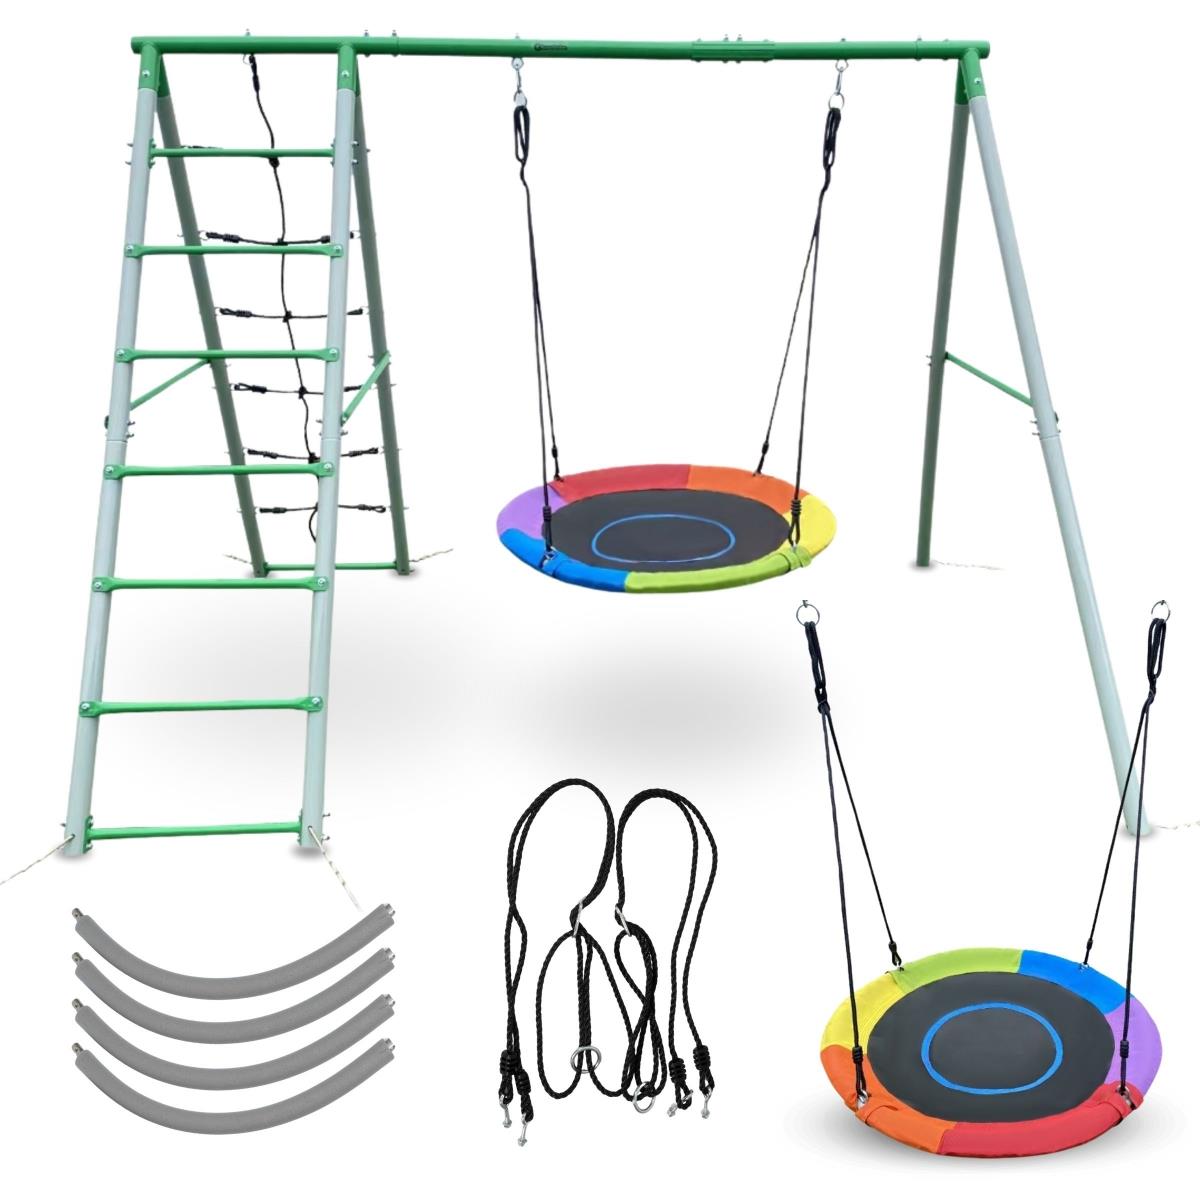 XL havelegeplads til børn med en storkerede gynge, stige og klatrenet